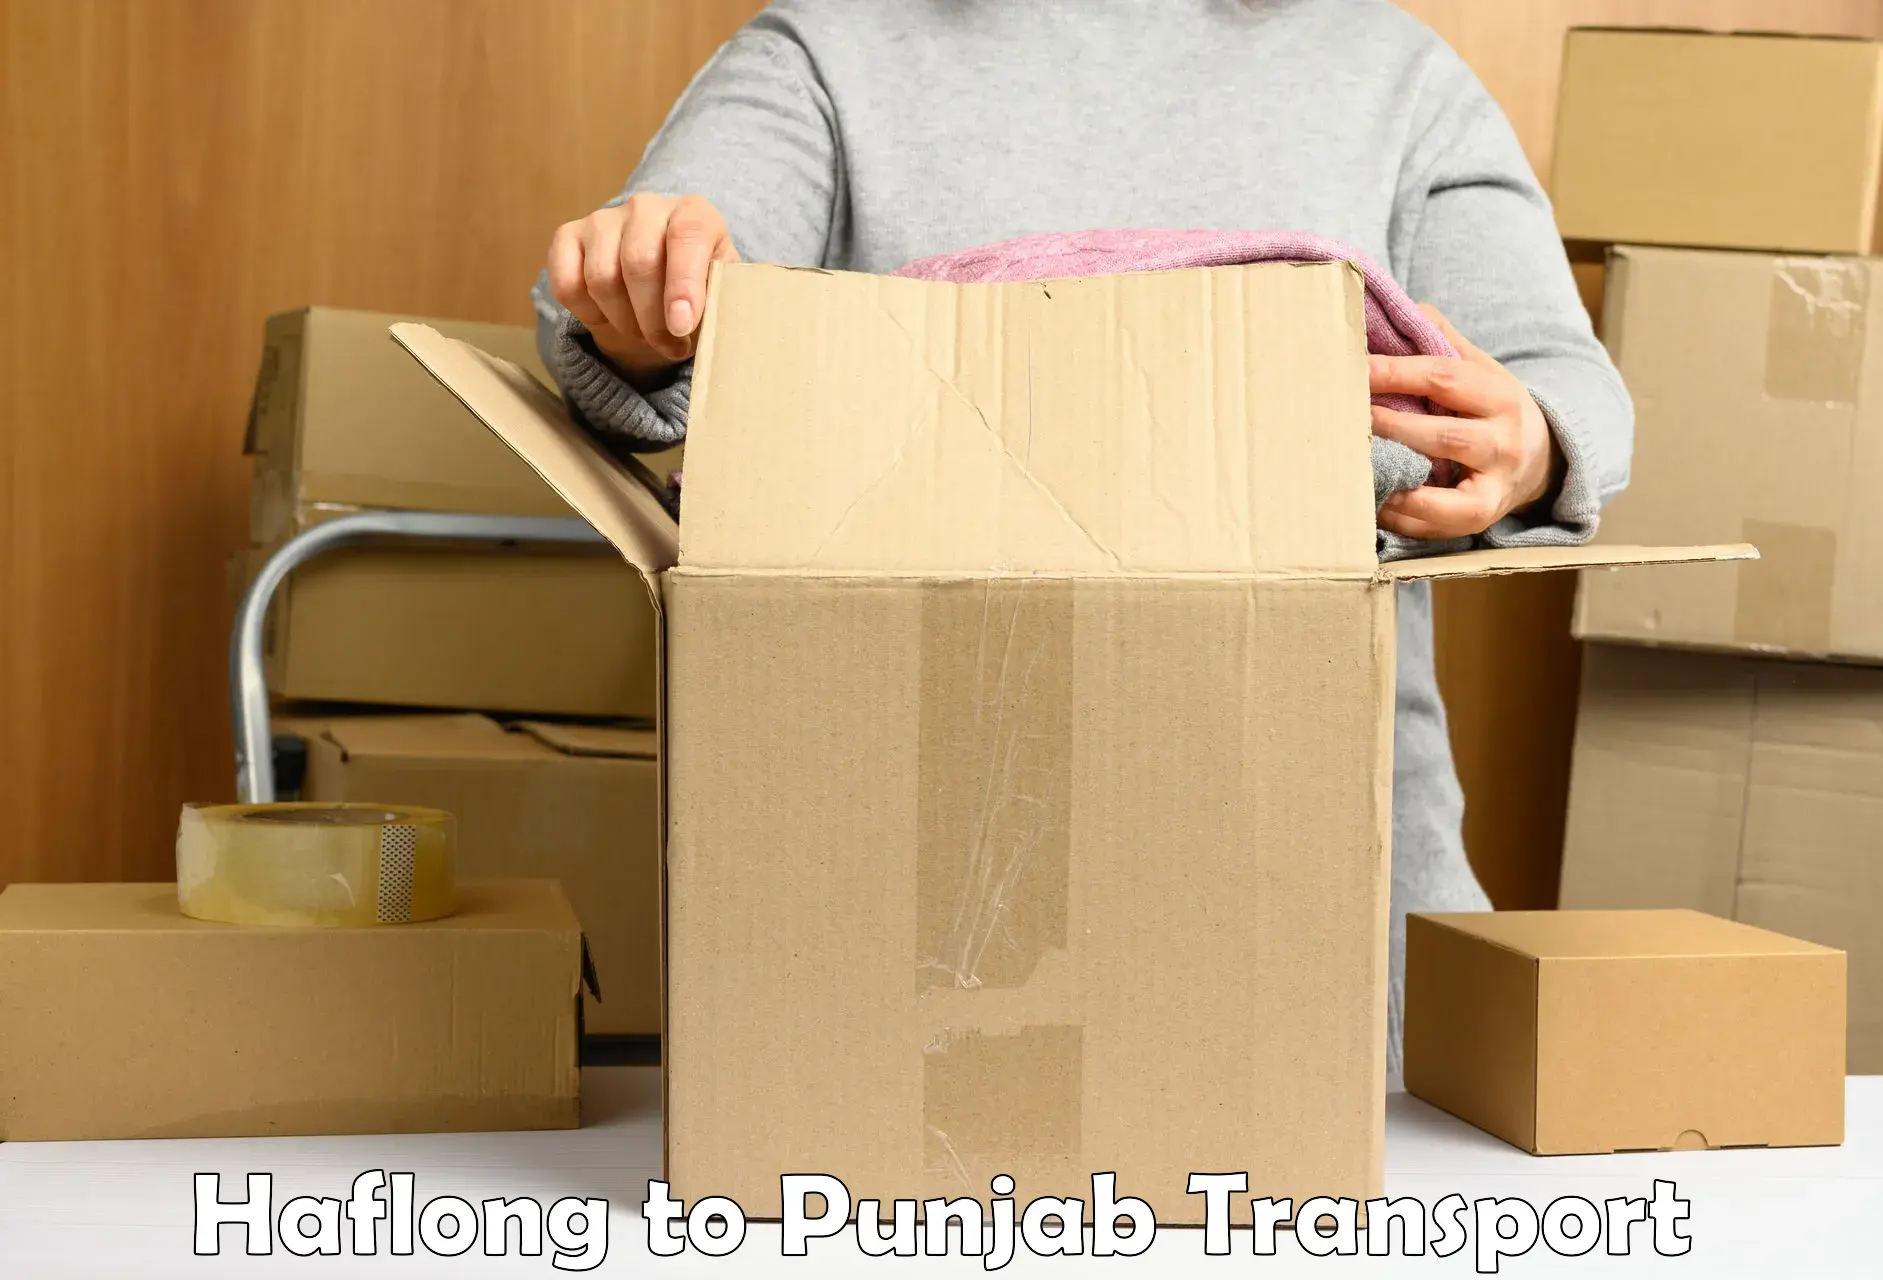 Furniture transport service Haflong to Jalandhar